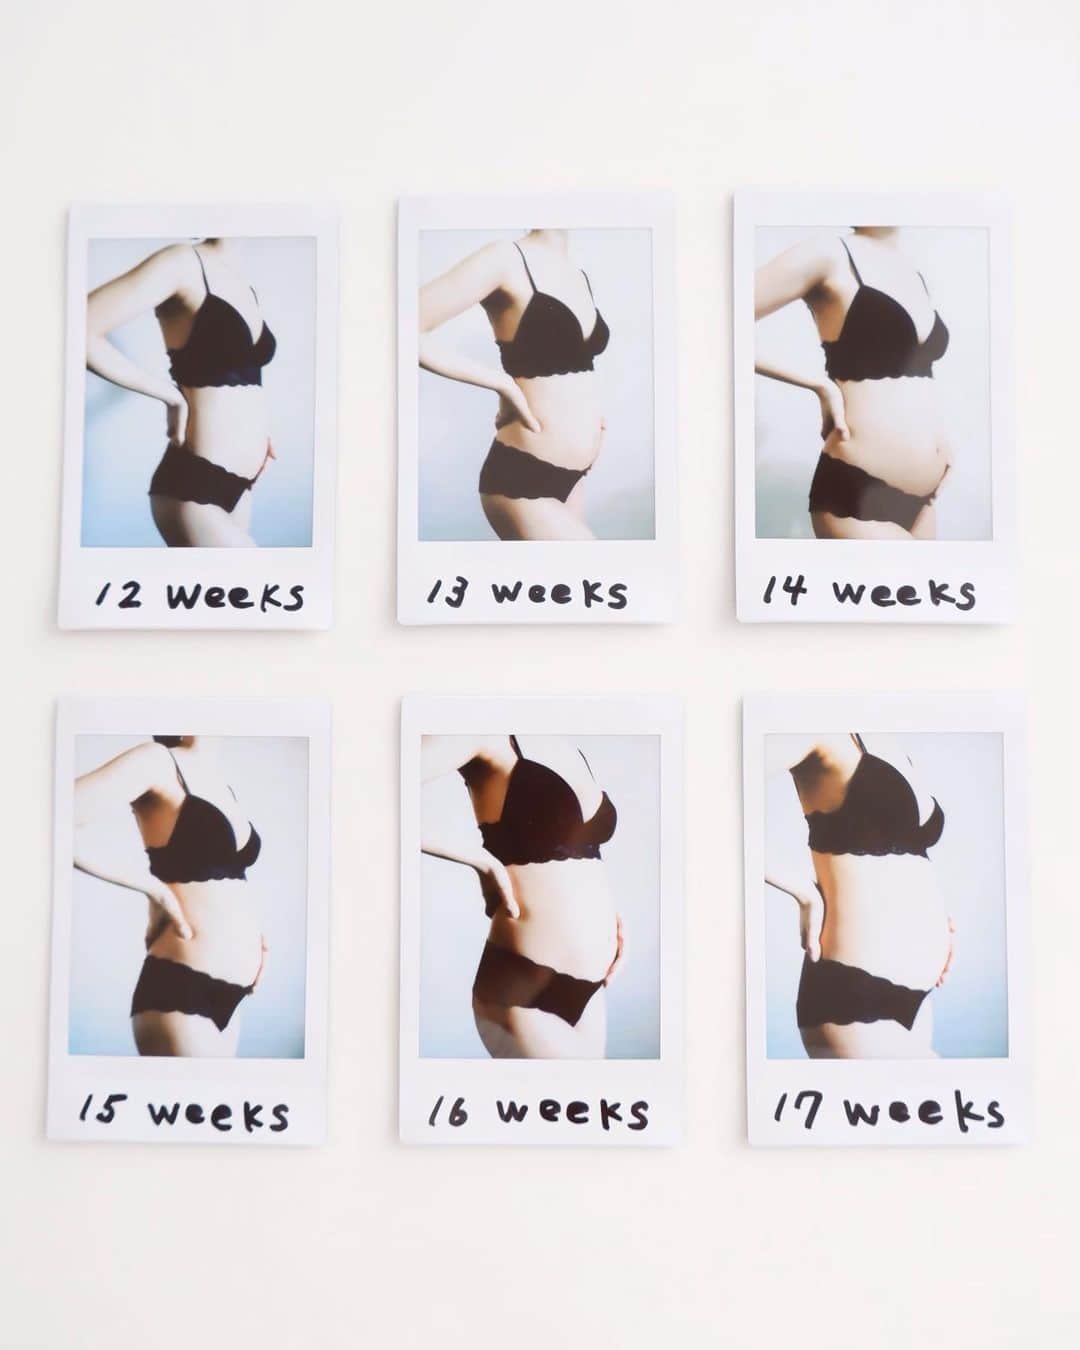 武智志穂さんのインスタグラム写真 武智志穂instagram 約35年間この体と付き合ってきたけれど 妊娠してからは 自分の体にはこんな機能も備わっていたのか と 女性の体の神秘に驚きの連続です まさに小さな宇宙 前回妊娠した時は 12週目で突然訪れた